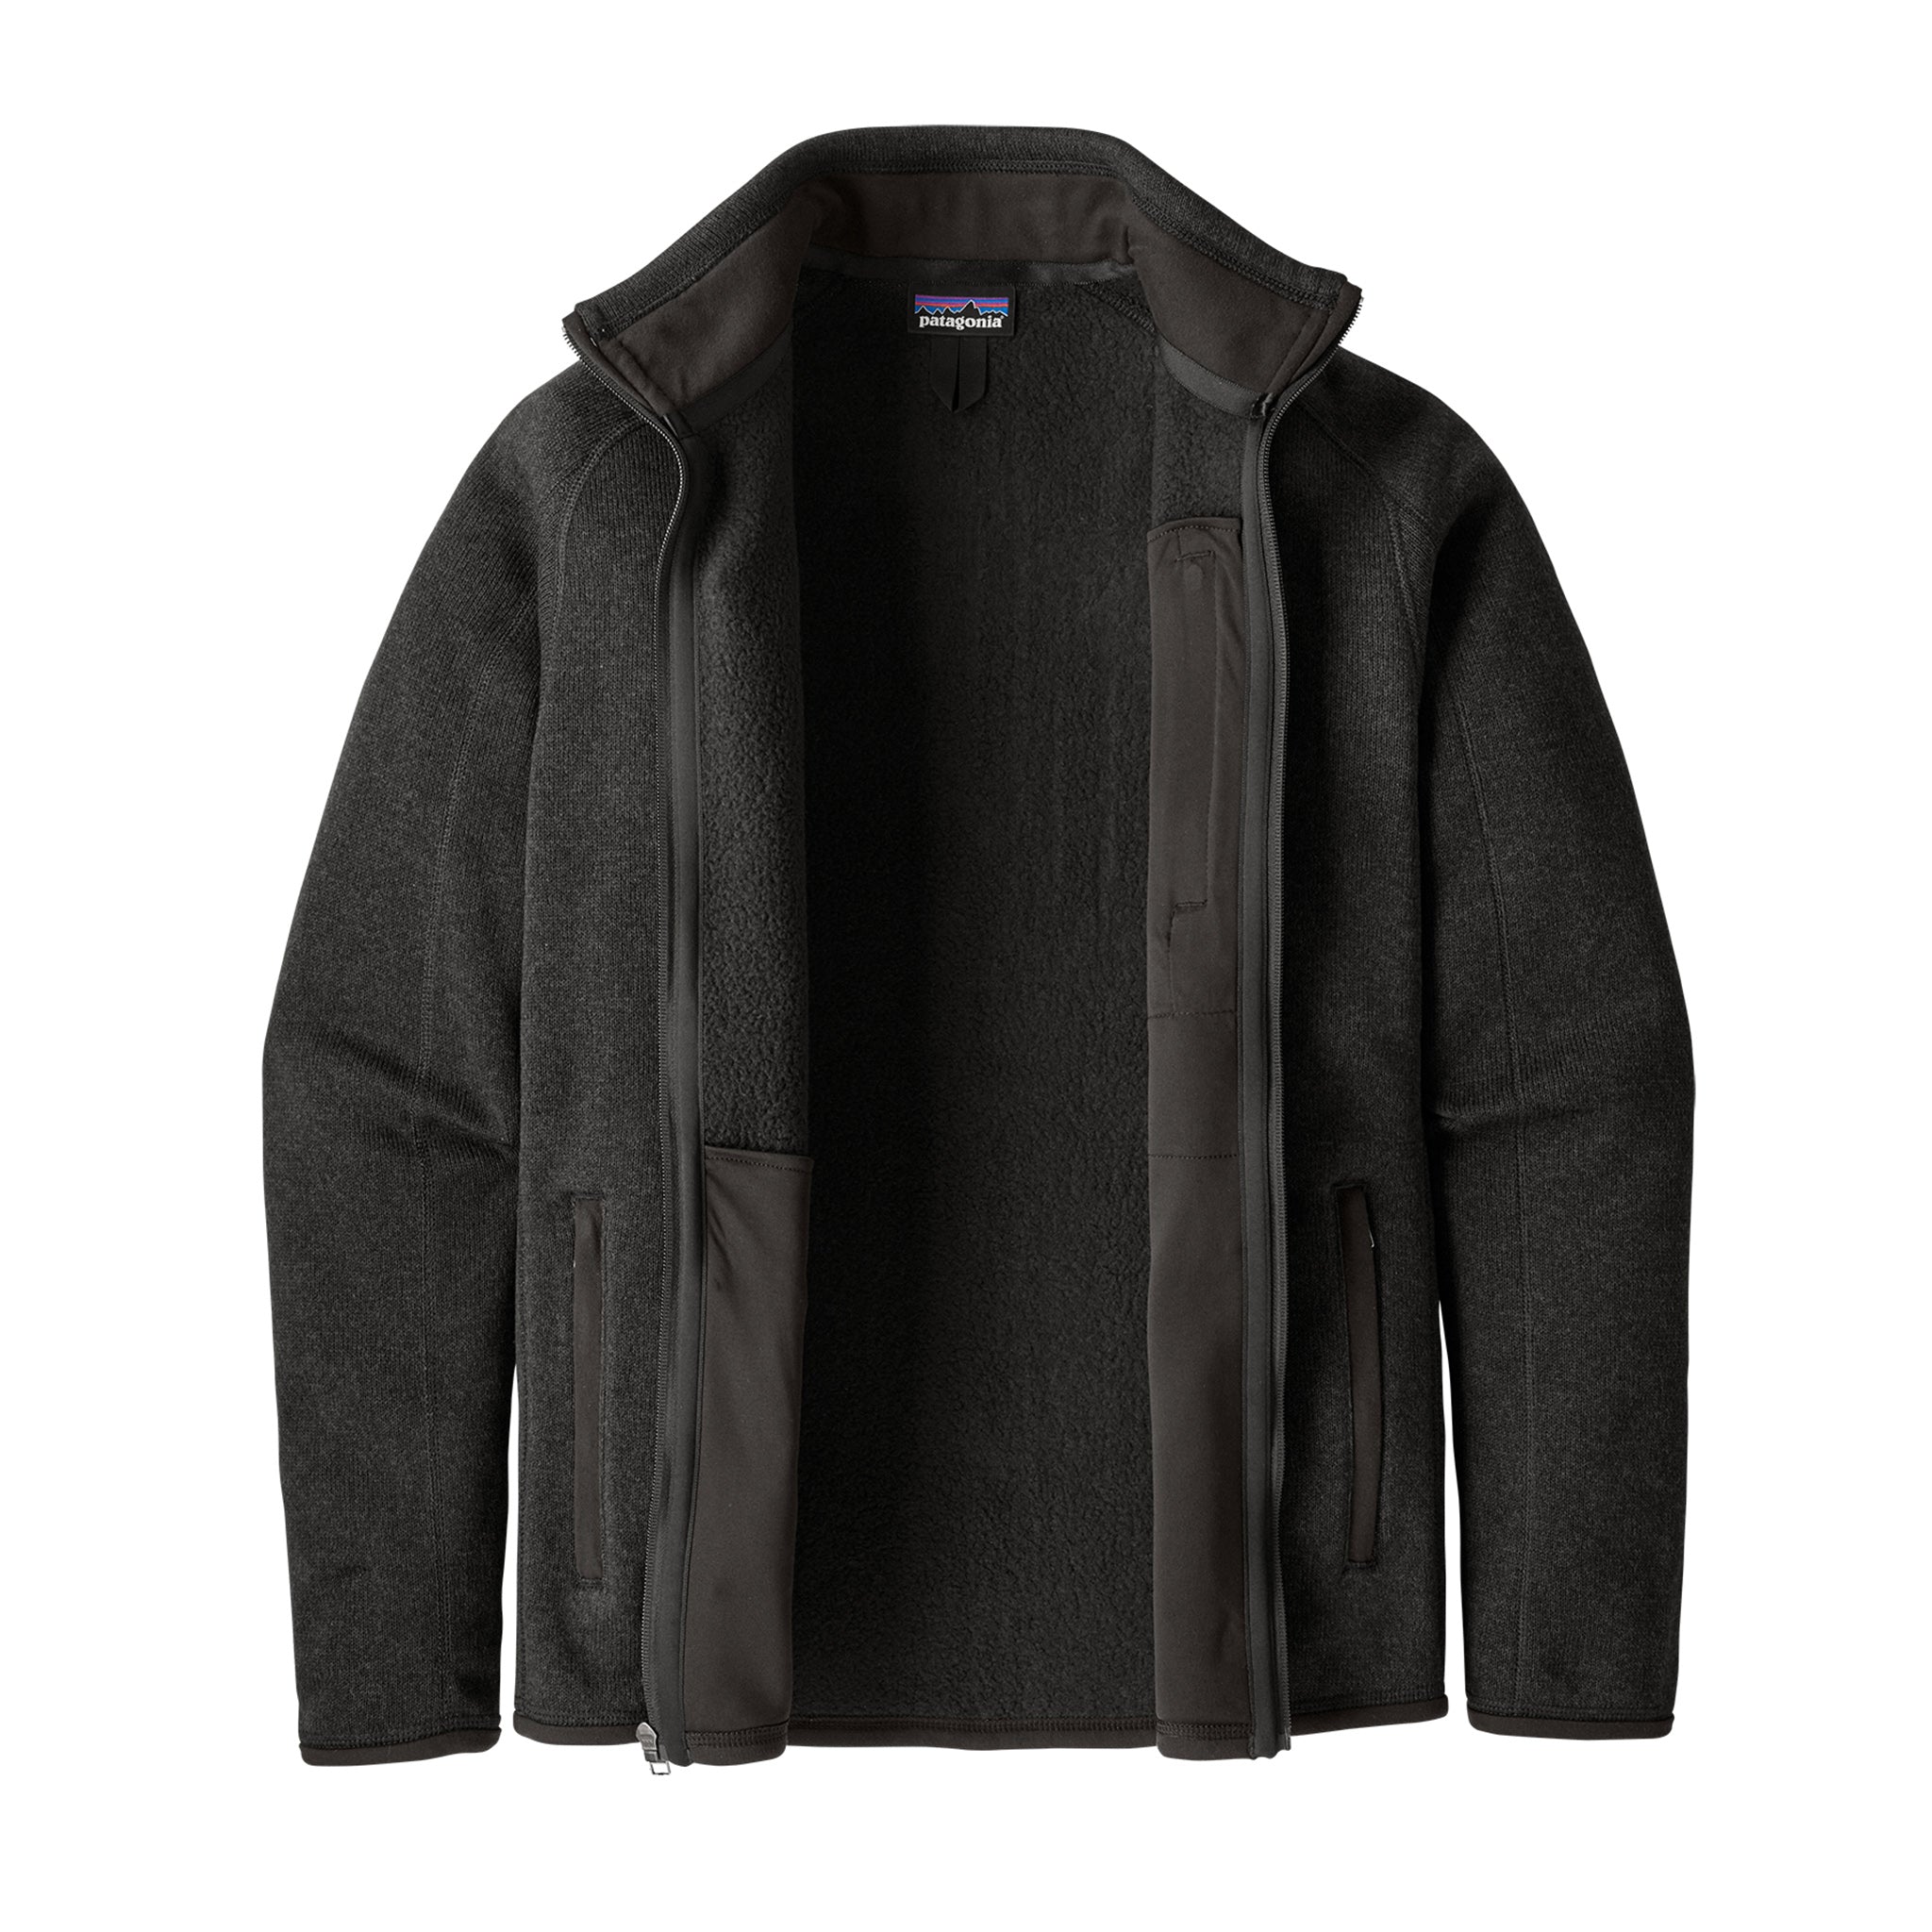 SALE! Patagonia Men's Better Sweater Jacket - Patagonia Fleece Jacket ...